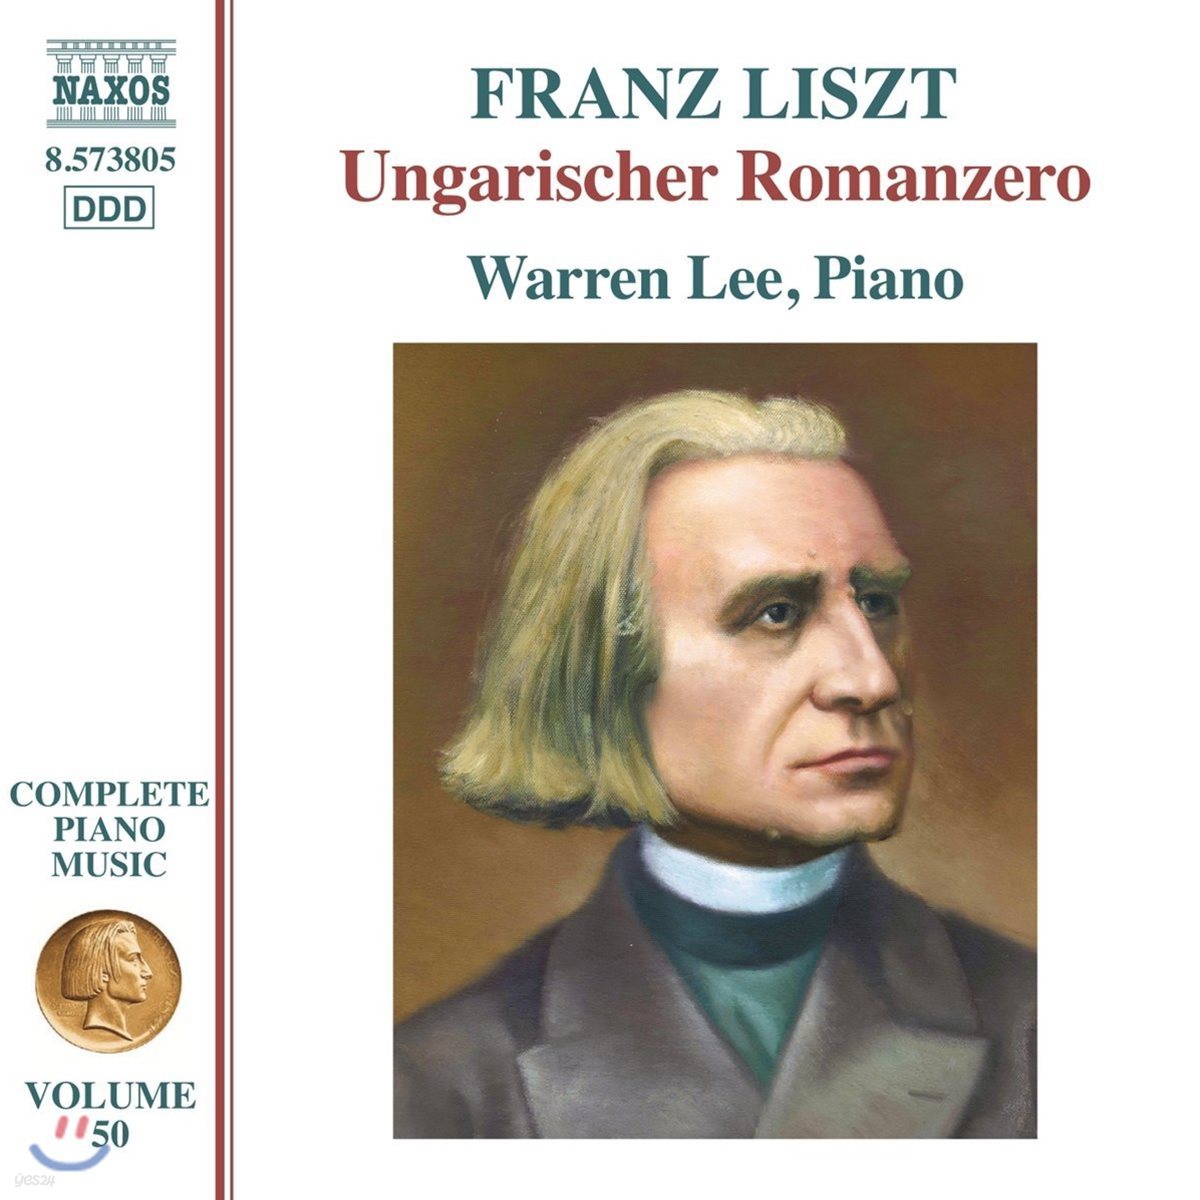 Warren Lee 리스트 : 언가리셔 로맨지로, 라코치 행진곡 외 (Liszt: Ungarischer Romanzero, S. 241a, Rakoczi-Marsch, Ungarische Nationalmelodien, S243)